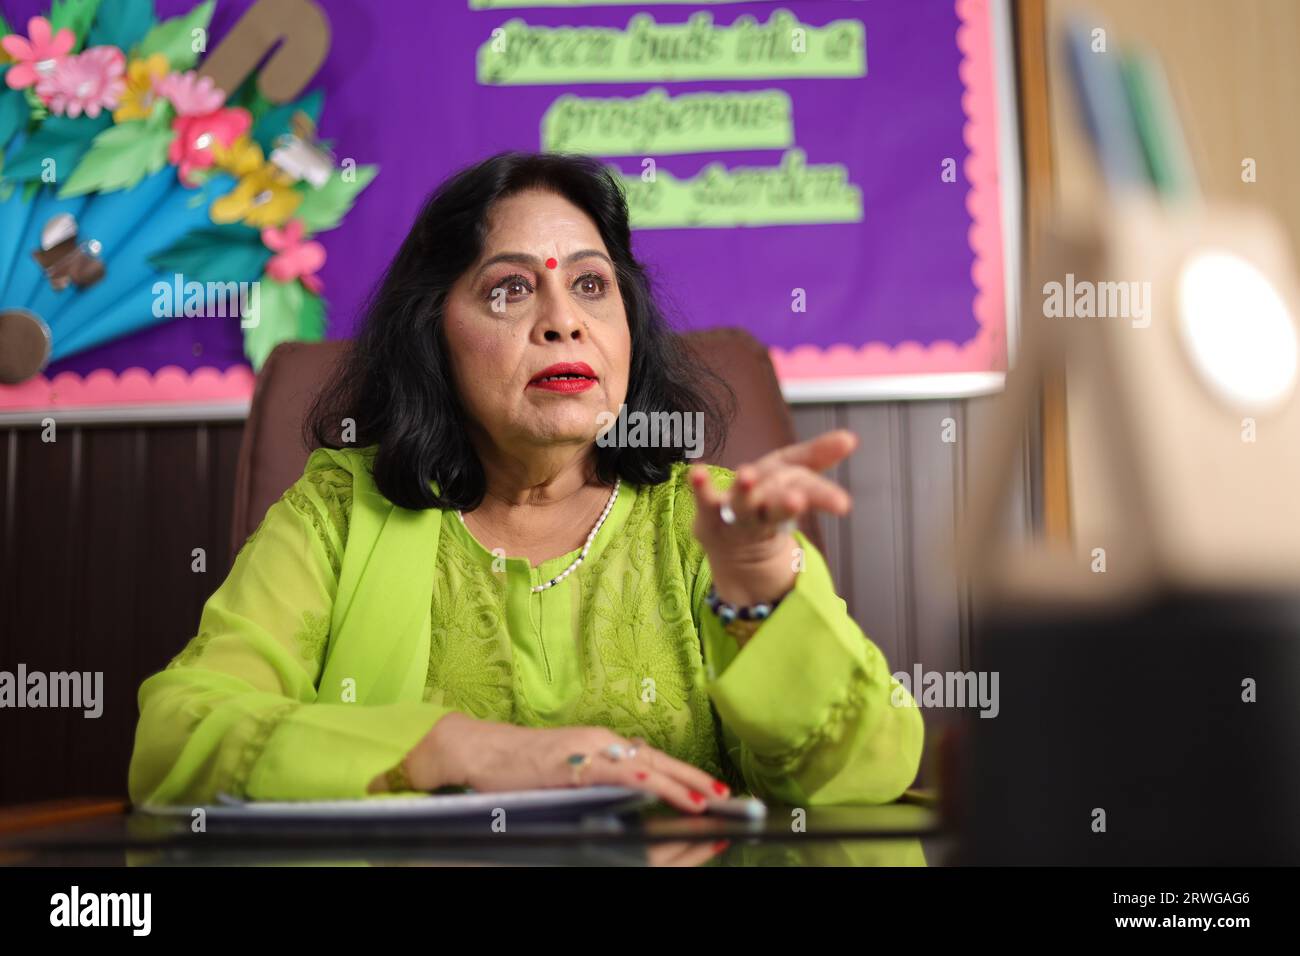 Preside di scuola seduta nel suo ufficio con aggressività, furiosa rabbia, espressione furiosa. Foto Stock